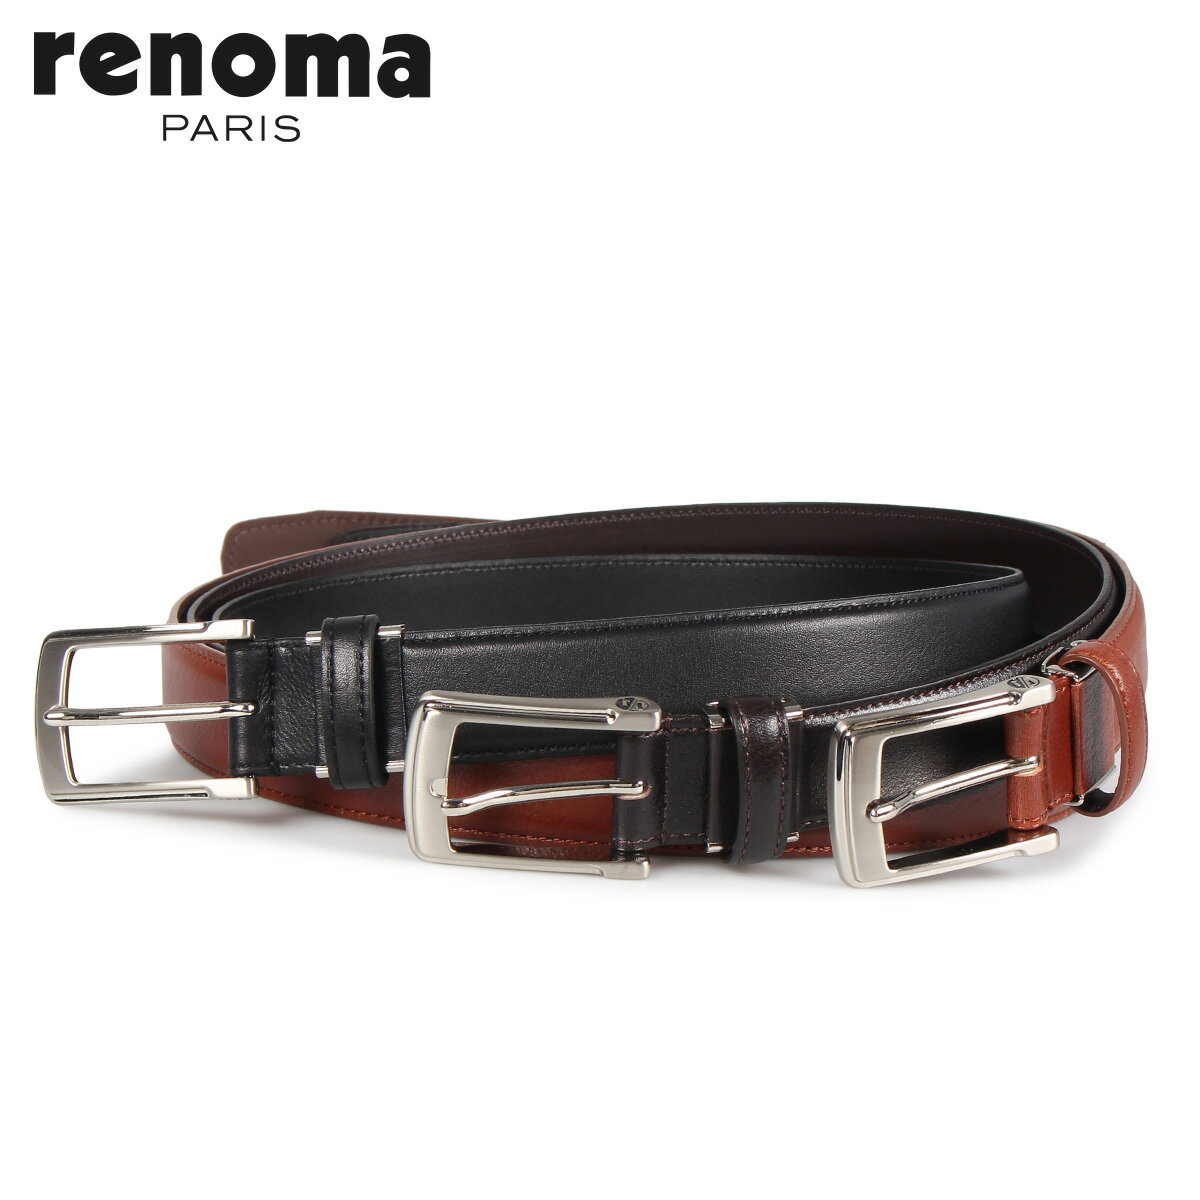 レノマ RENOMA LEATHER BELT レノマ ベルト レザーベルト メンズ 本革 ブラック ブラウン ダーク ブラウン 黒 RE-205092